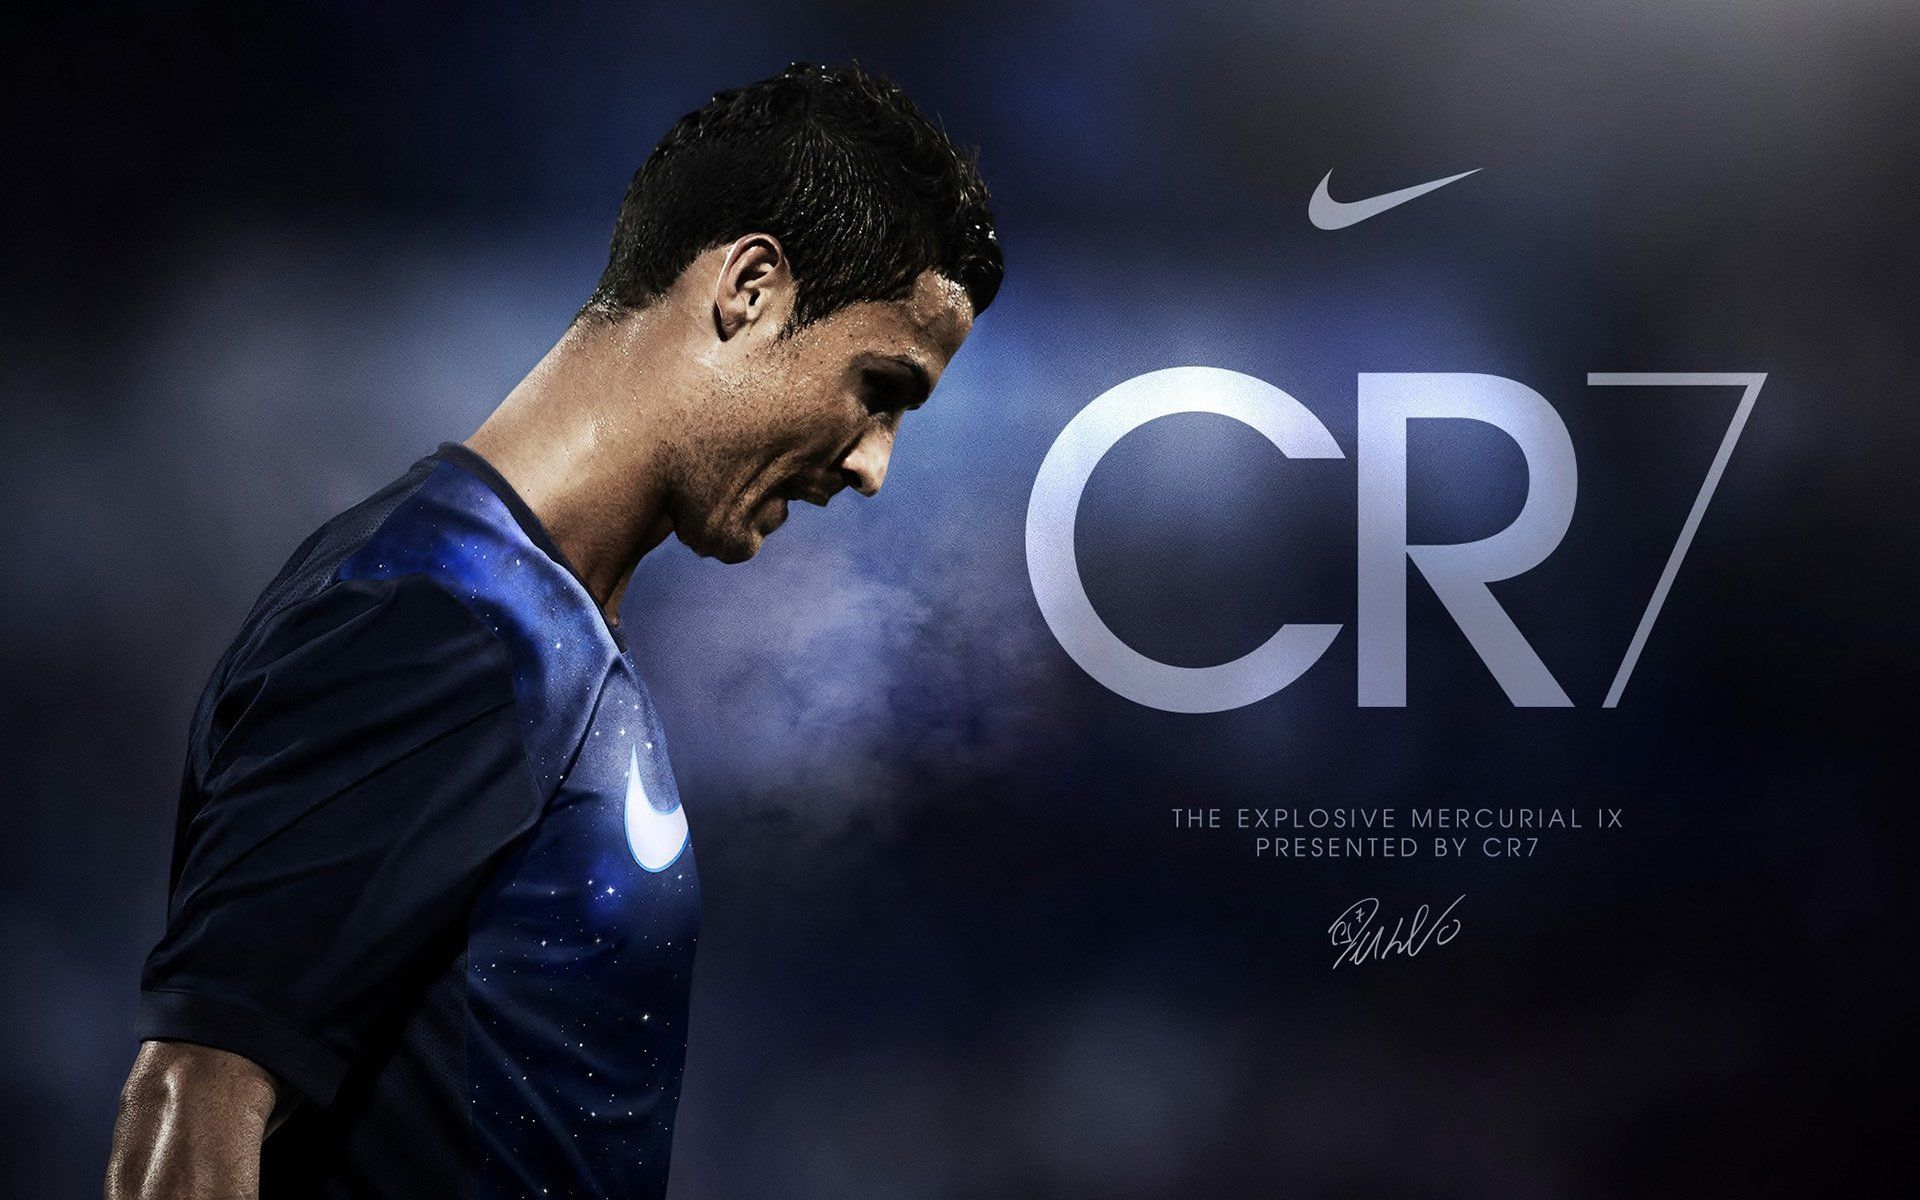 Cristiano Ronaldo Cool Wallpaper: HD, 4K, 5K for PC